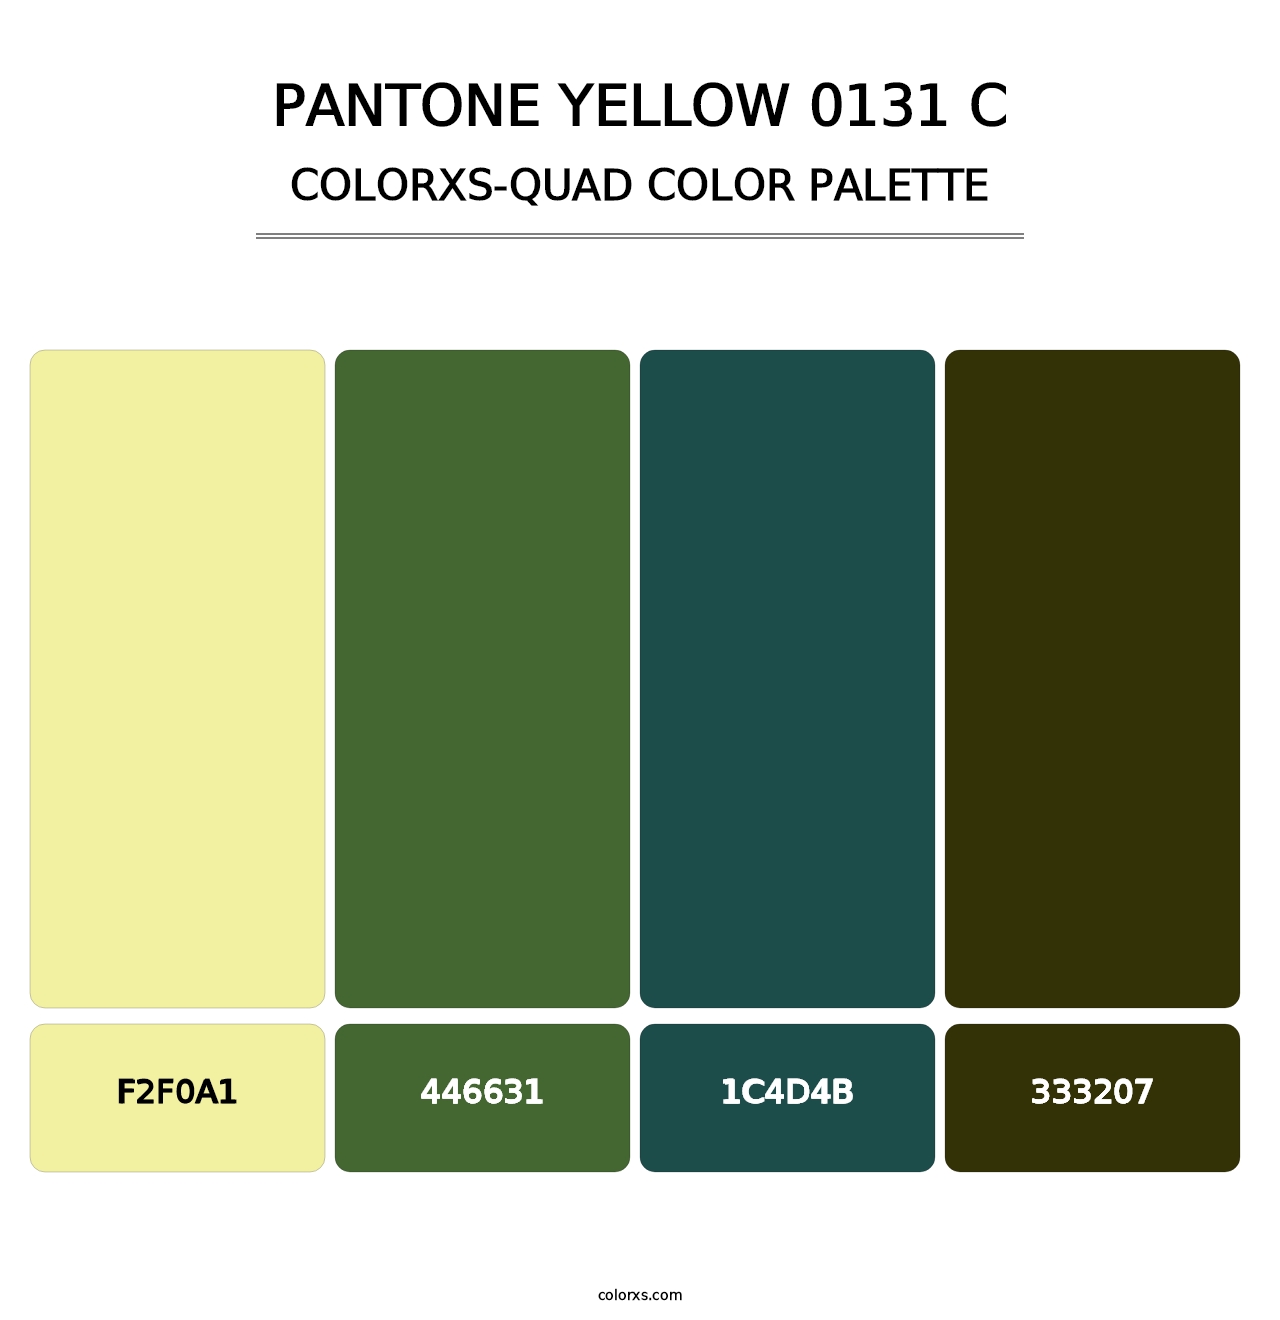 PANTONE Yellow 0131 C - Colorxs Quad Palette